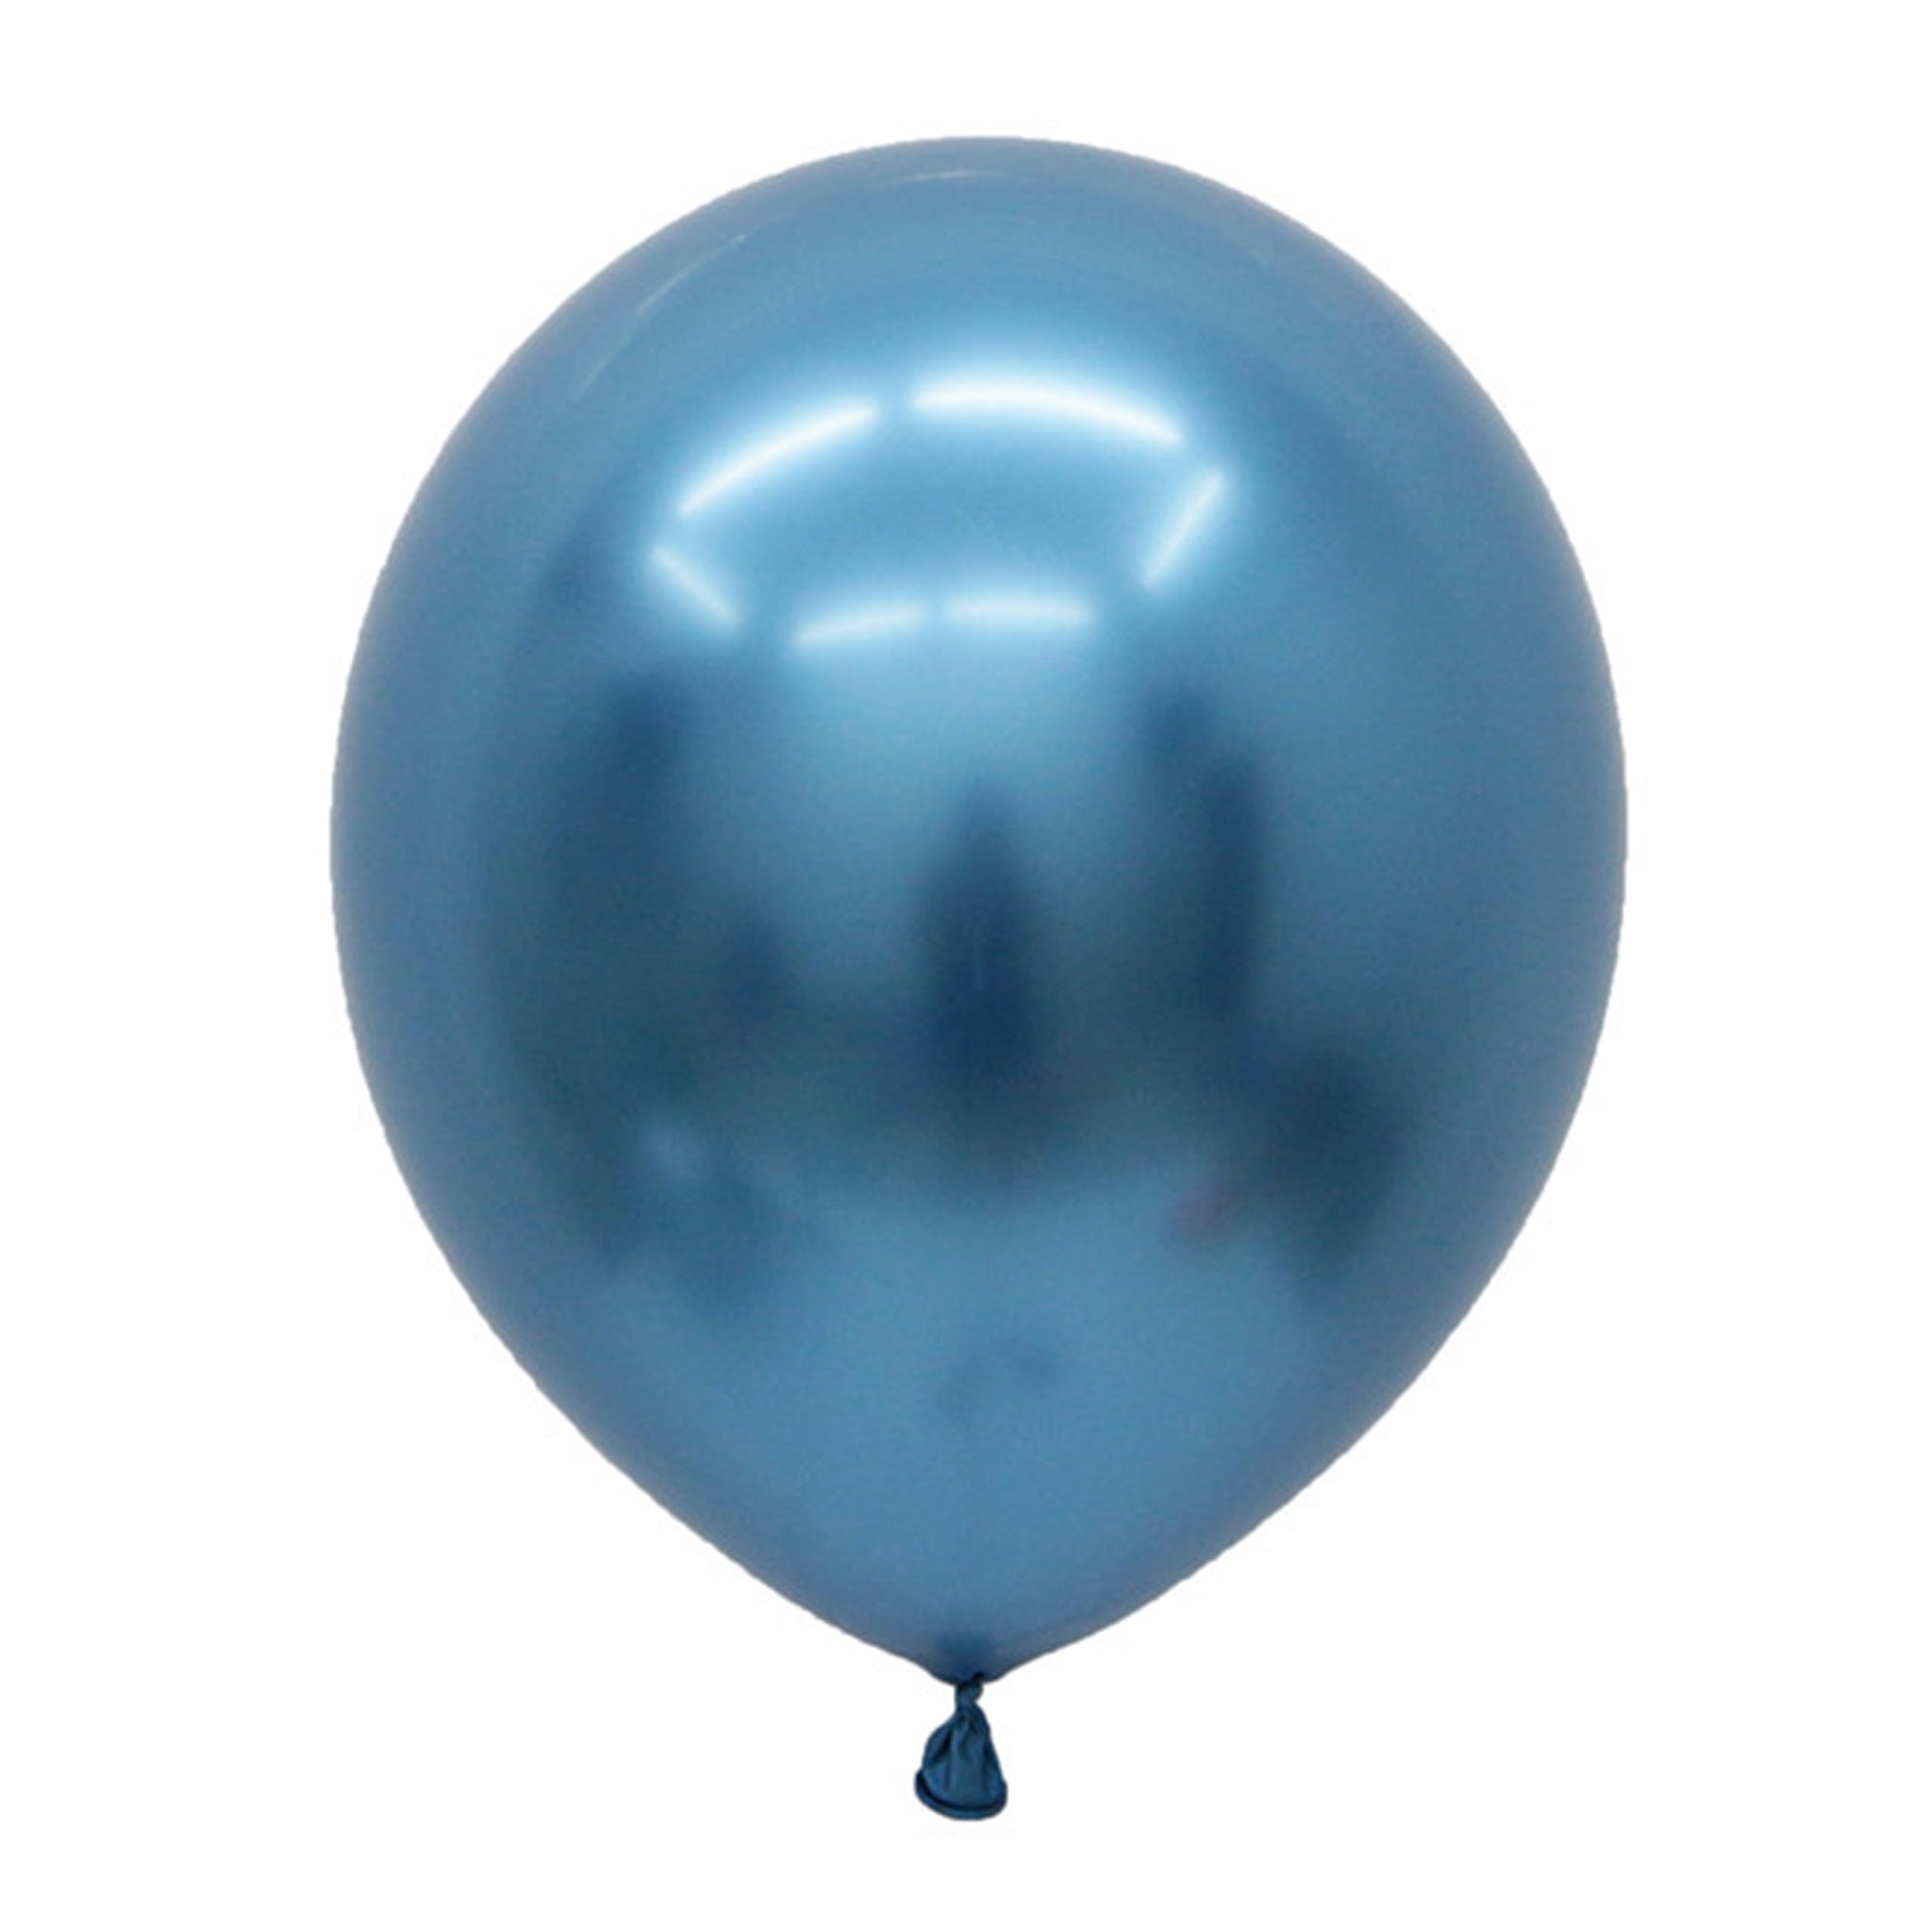 Blue chrome latex balloons for sale online in Dubai